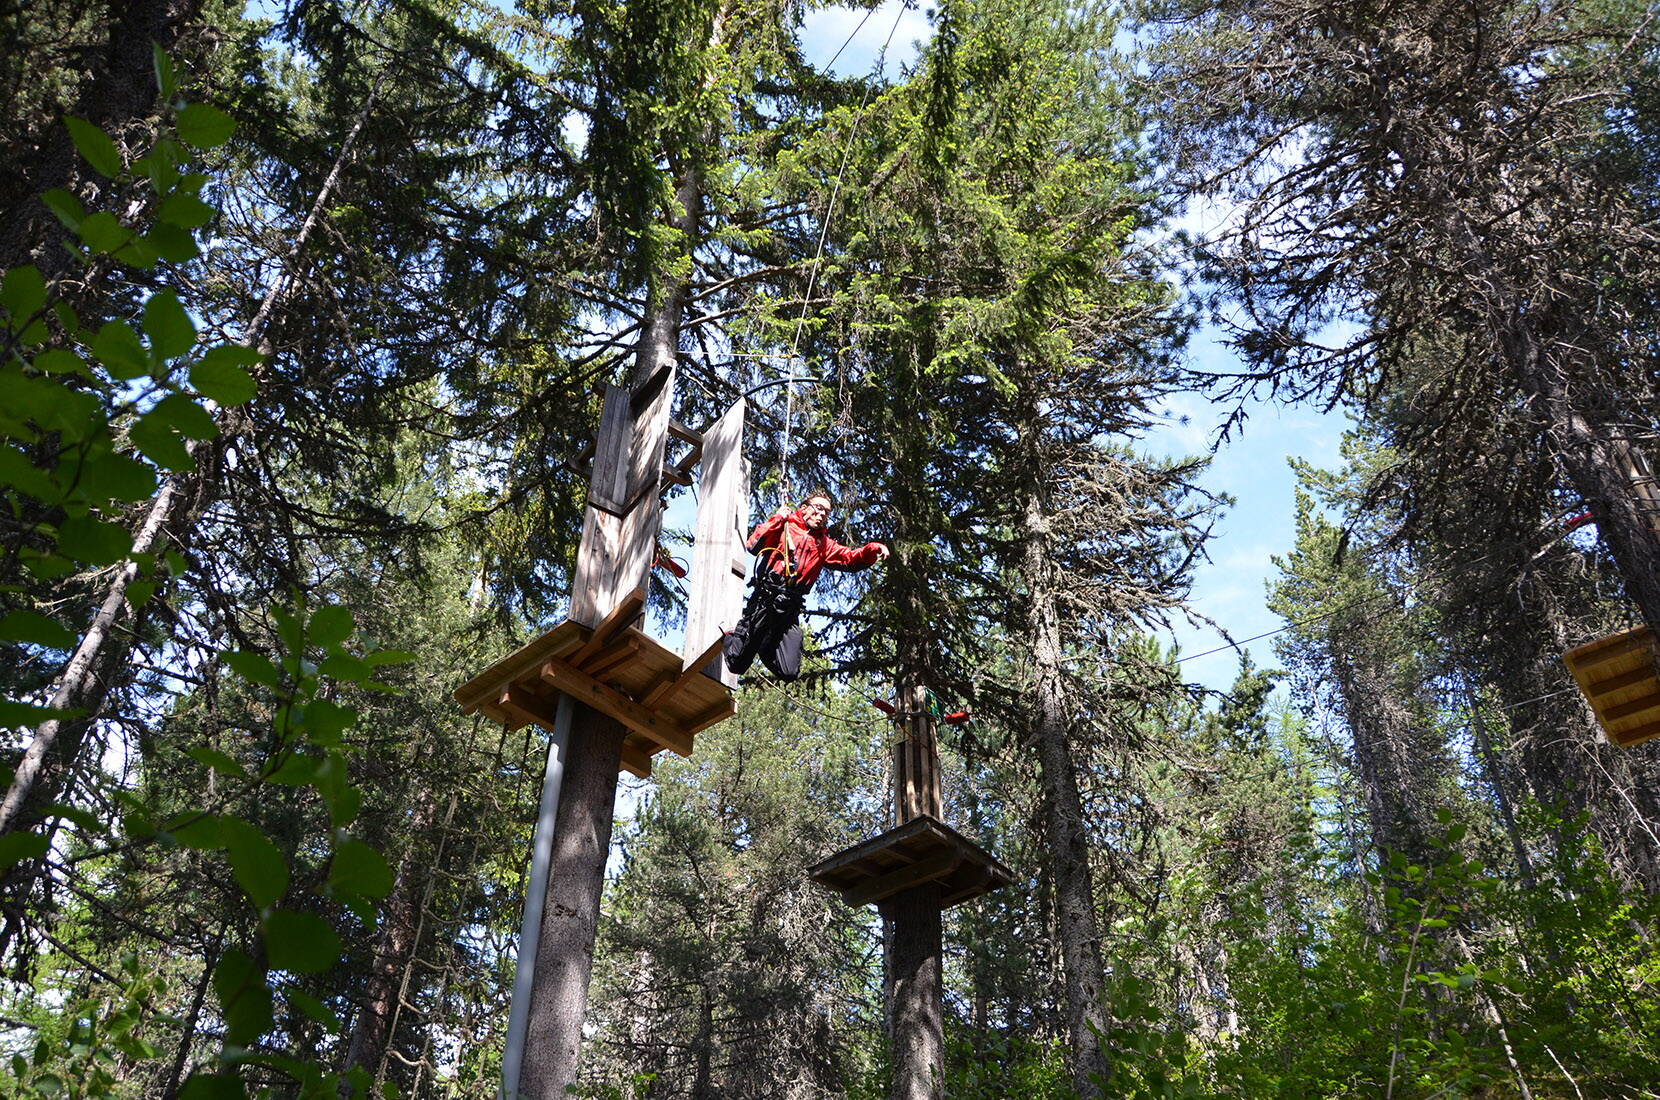 Im Kletterpark hangelt man sich von Baum zu Baum und überwindet verschiedene Hindernisse in den Baumwipfeln.